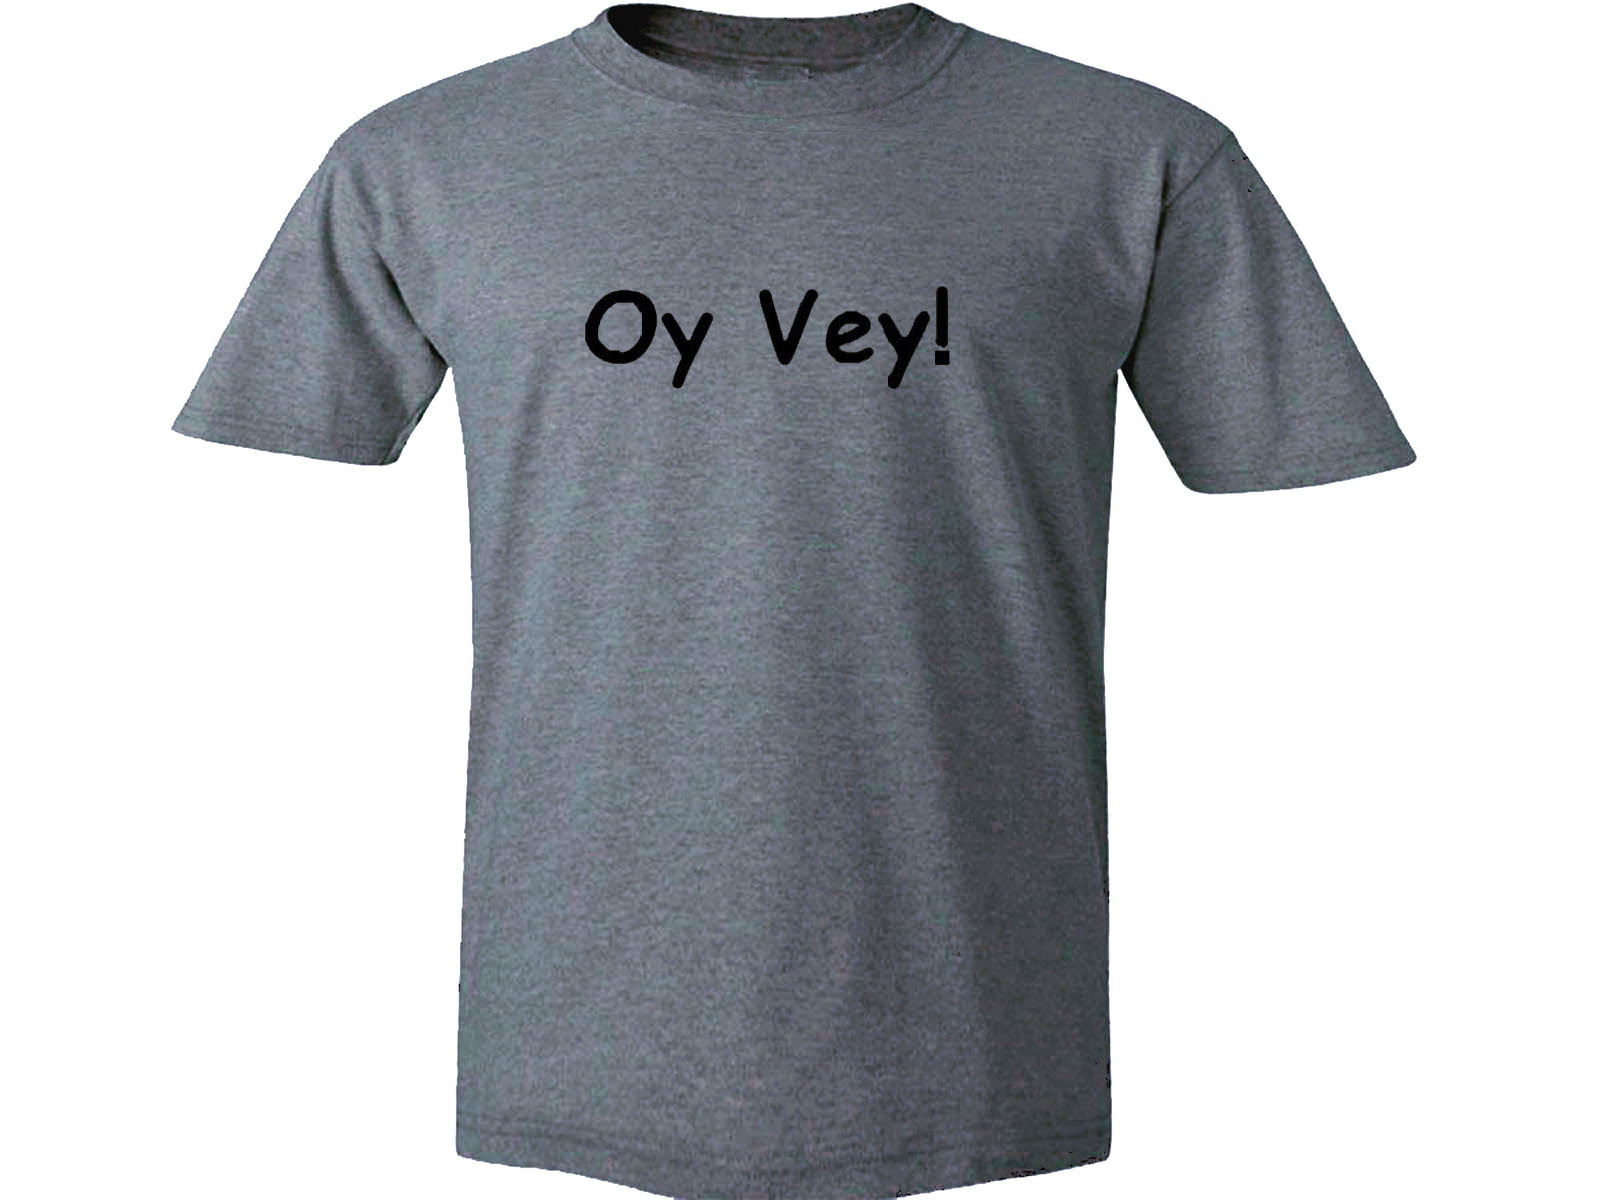 Oy vey funny Jewish gray t-shirt